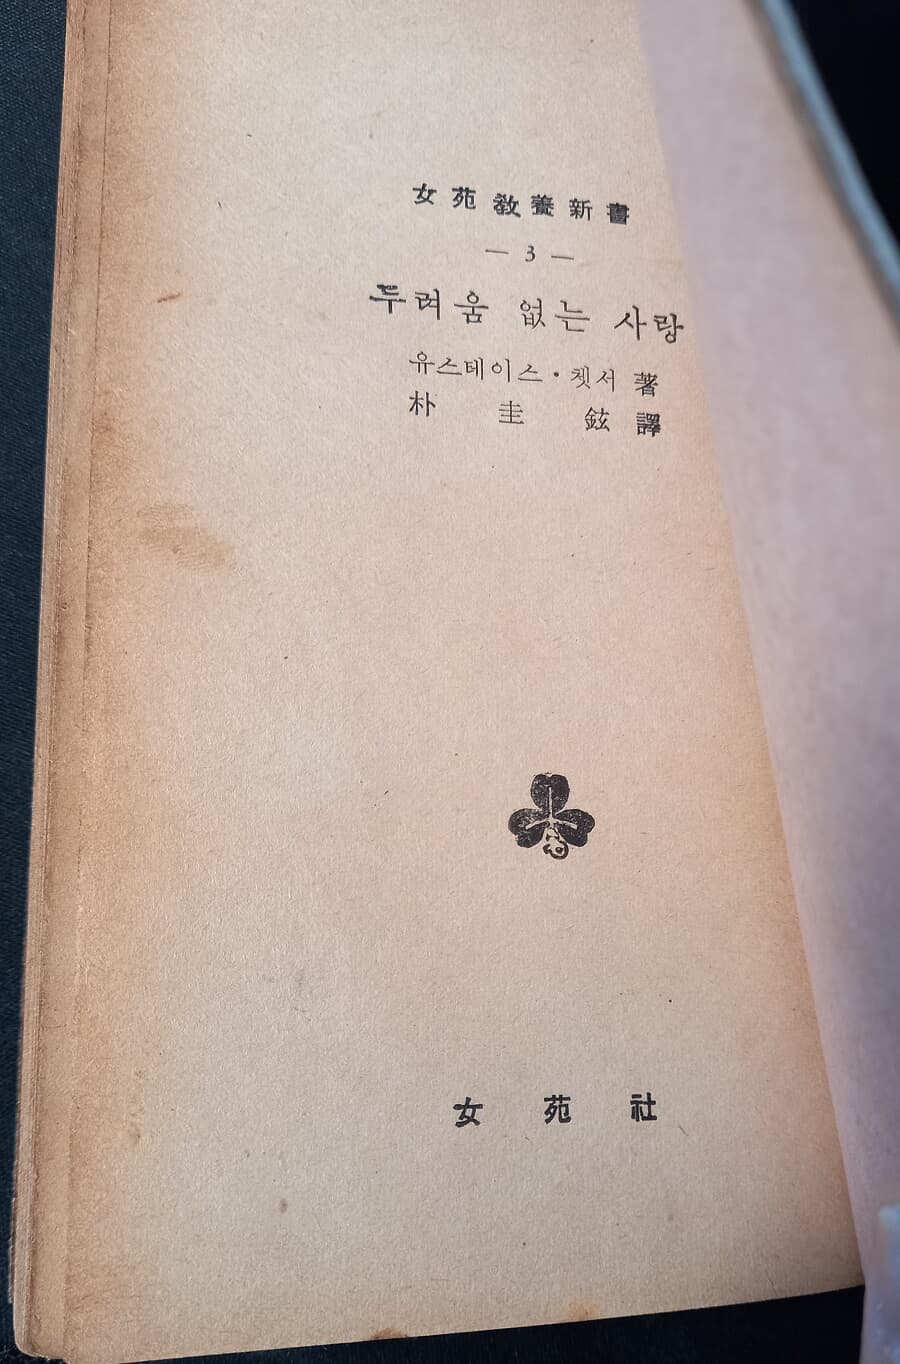 희귀본, 두려움 없는 사랑 (여원교양신서 3, 박규현 역, 여원사 1959) 